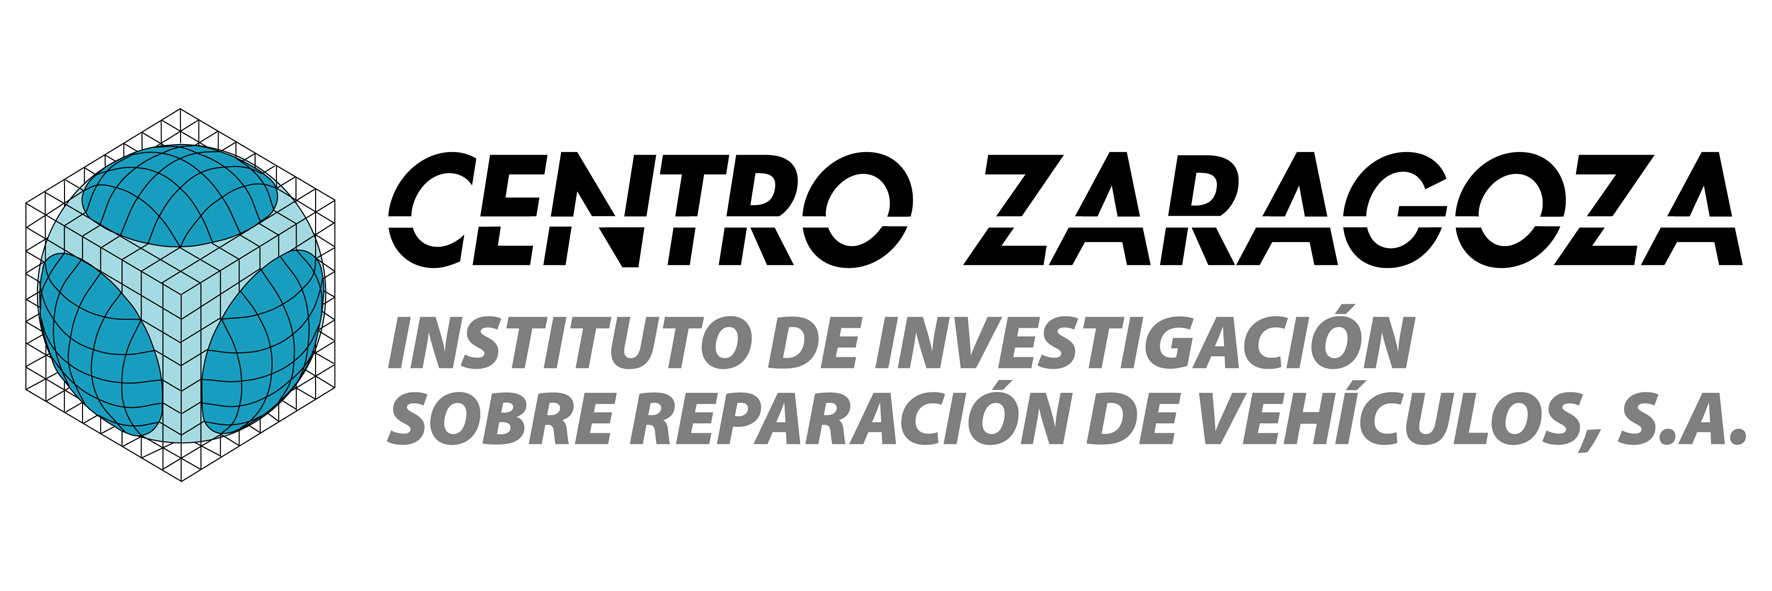 Centro Zaragoza [Instituto de investigación sobre reparación de vehículos, S.A.]